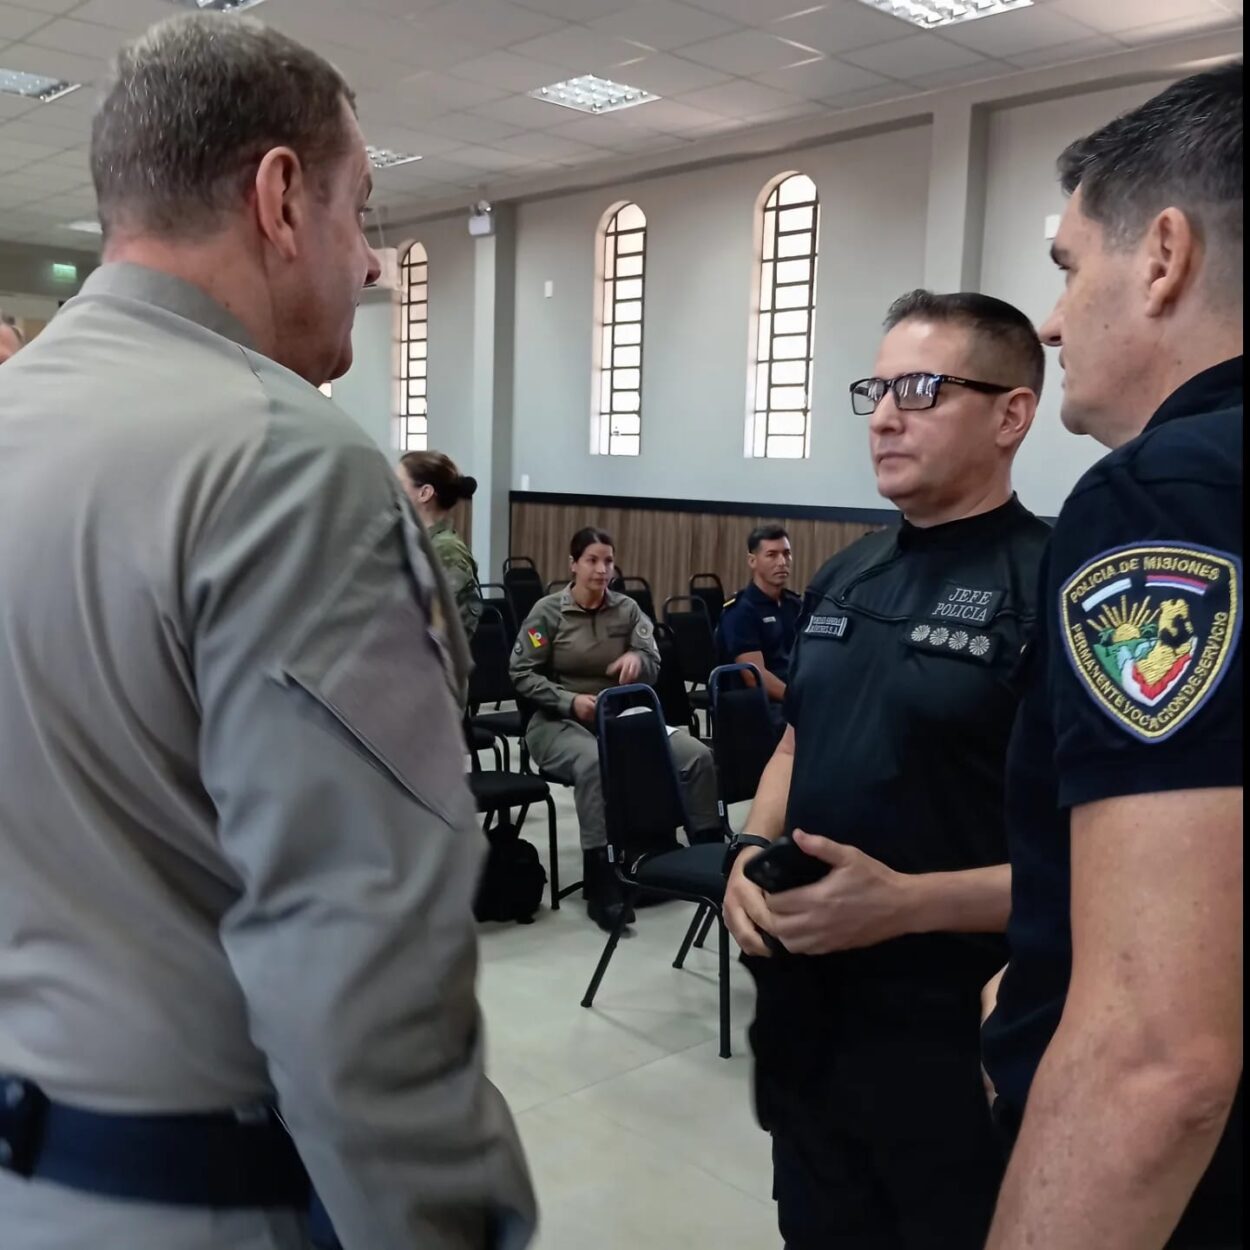 La Policía de Misiones participó del encuentro internacional de seguridad de fronteras imagen-12